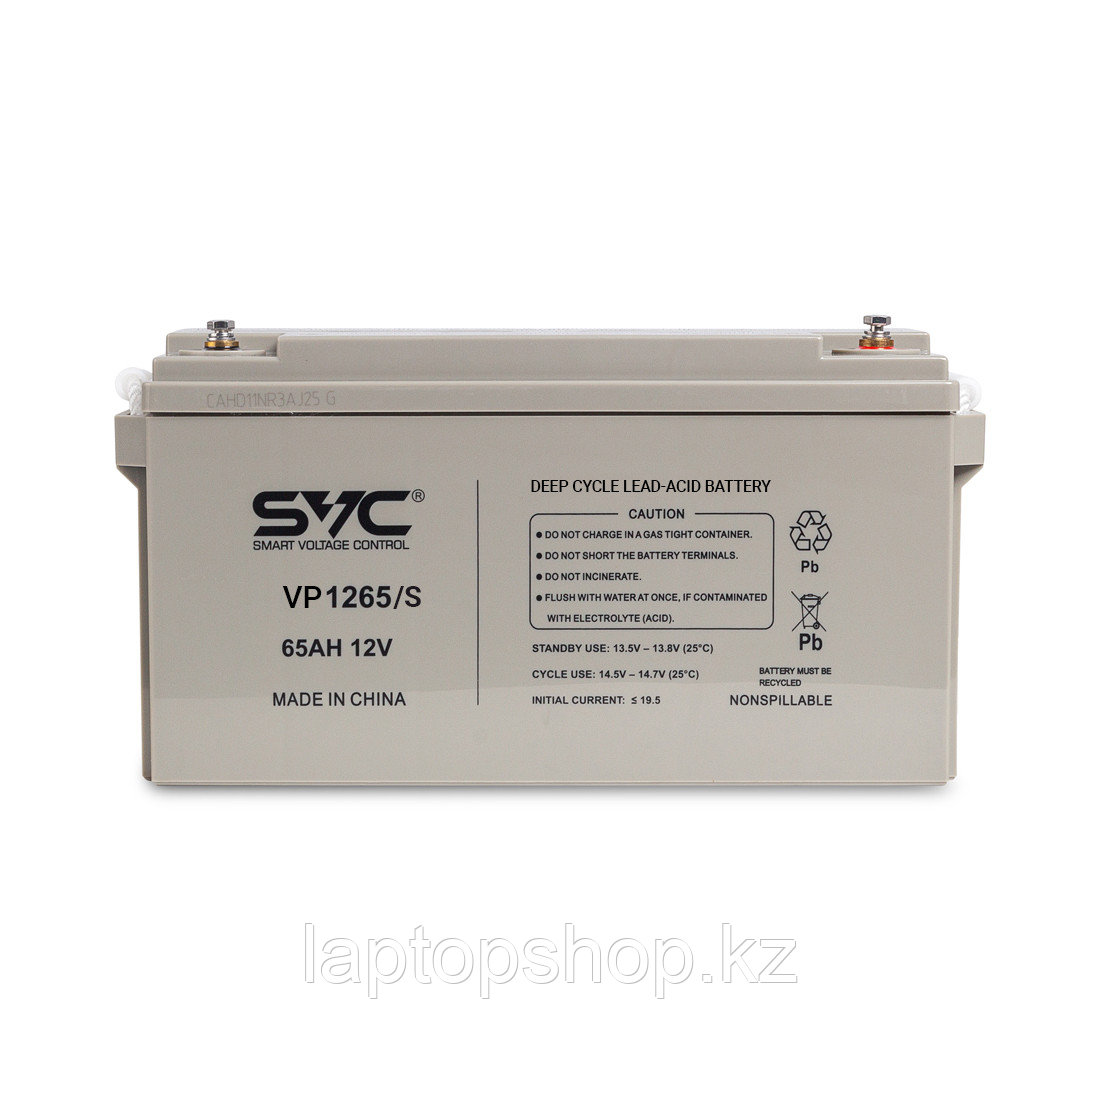 Аккумуляторная батарея SVC, Свинцово-кислотная VP1265/S 12В 65 Ач, Размер в мм.: 350*165*178